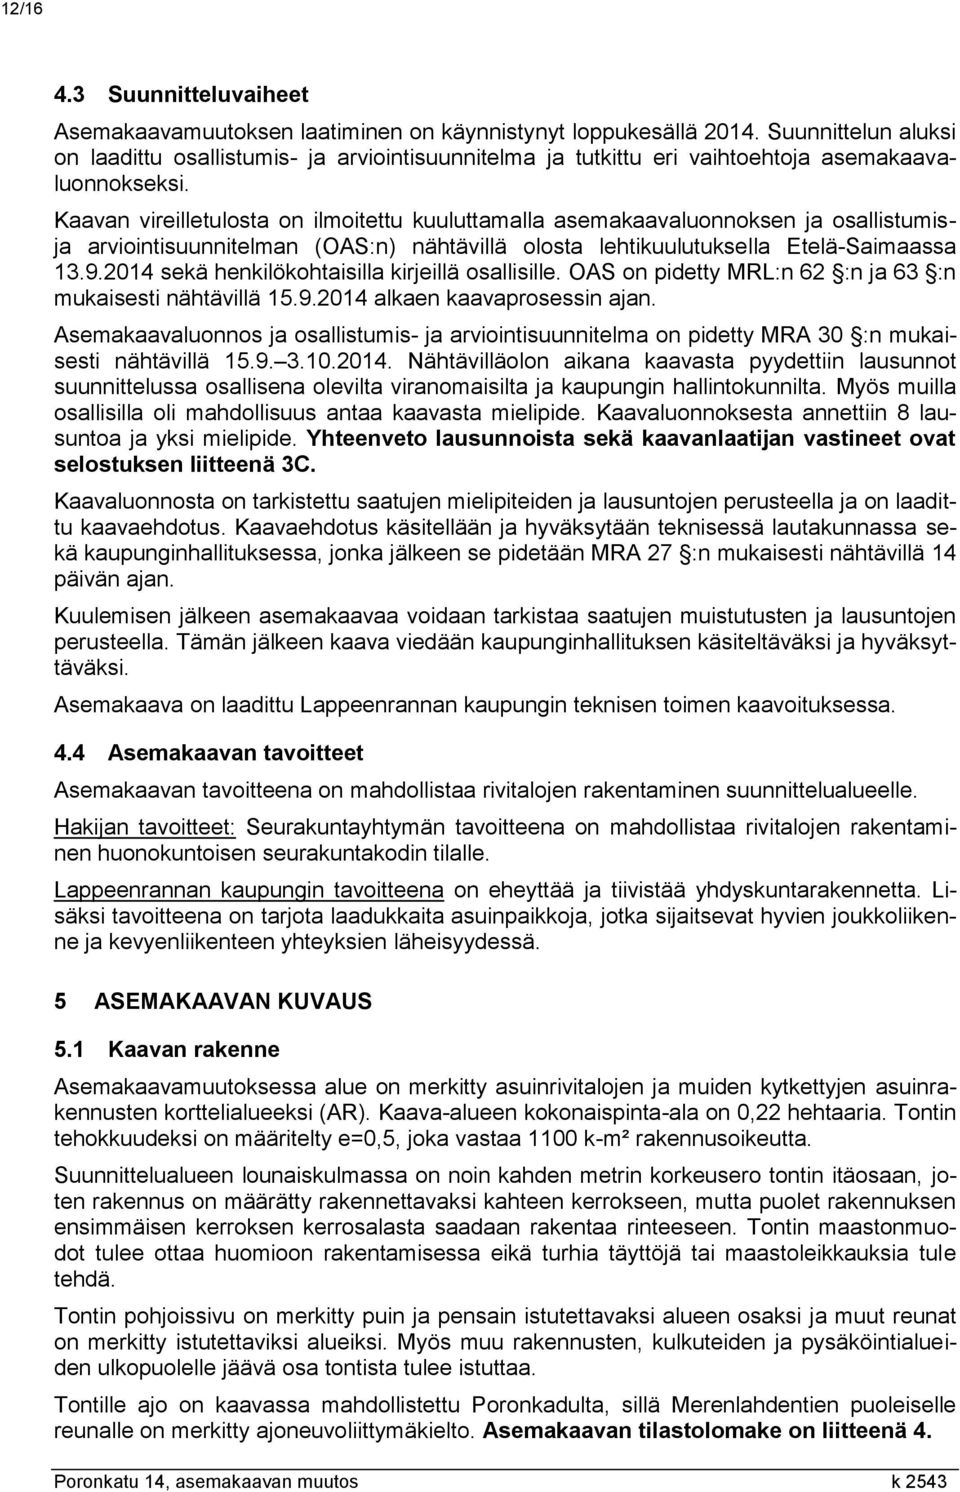 Kaavan vireilletulosta on ilmoitettu kuuluttamalla asemakaavaluonnoksen ja osallistumisja arviointisuunnitelman (OAS:n) nähtävillä olosta lehtikuulutuksella Etelä-Saimaassa 13.9.